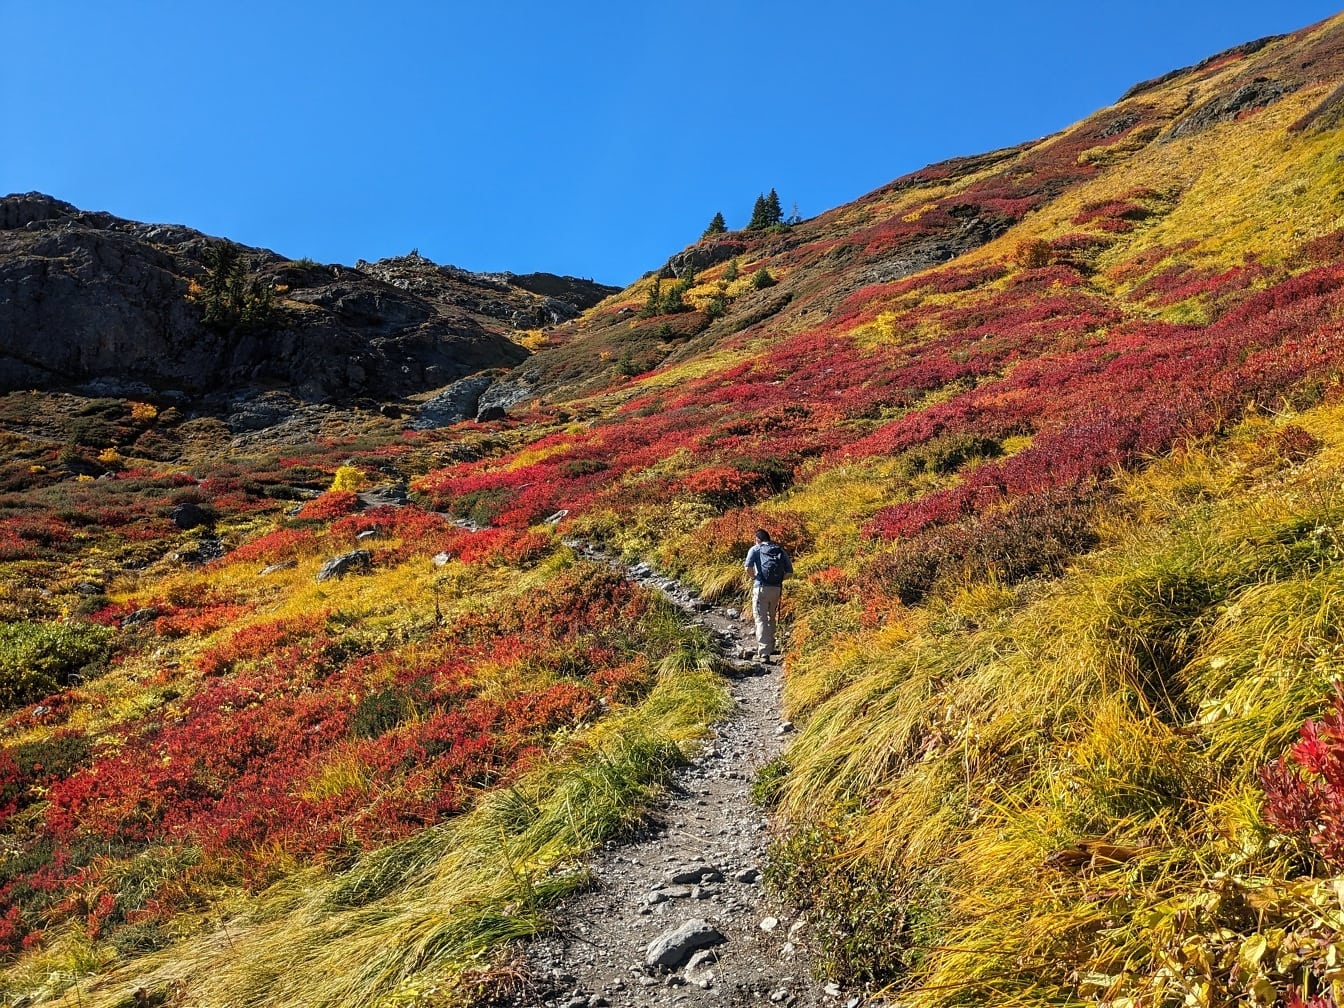 オレンジイエローの紅葉で斜面をハイキングする登山者